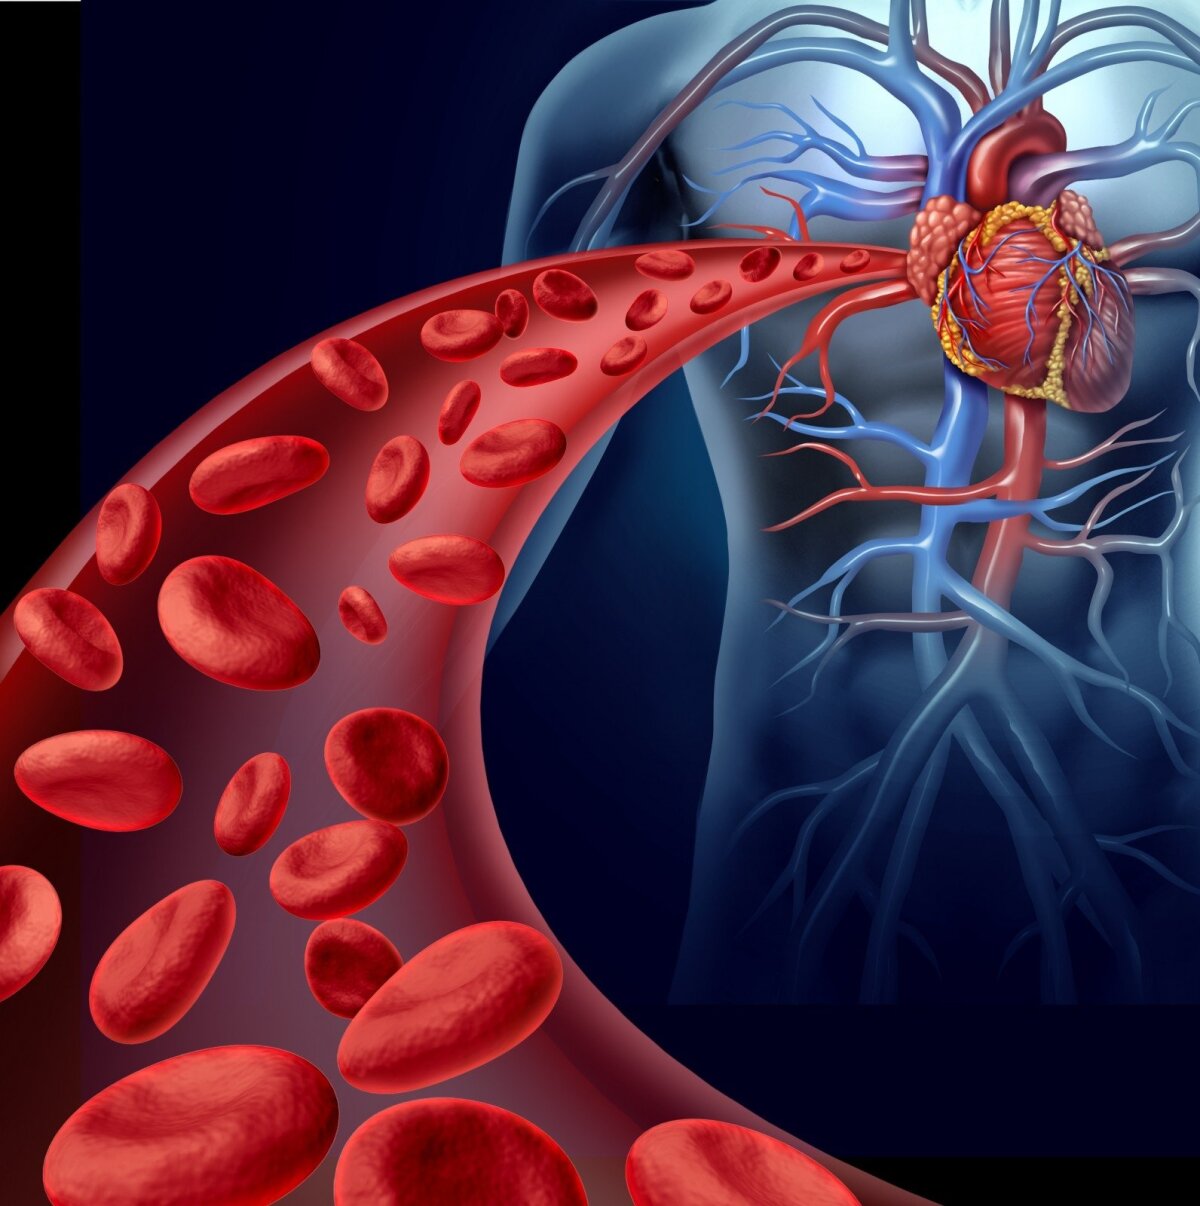 Vyresnių žmonių arterinė hipertenzija: ar visi sirgsime? | Karjera ir sveikata